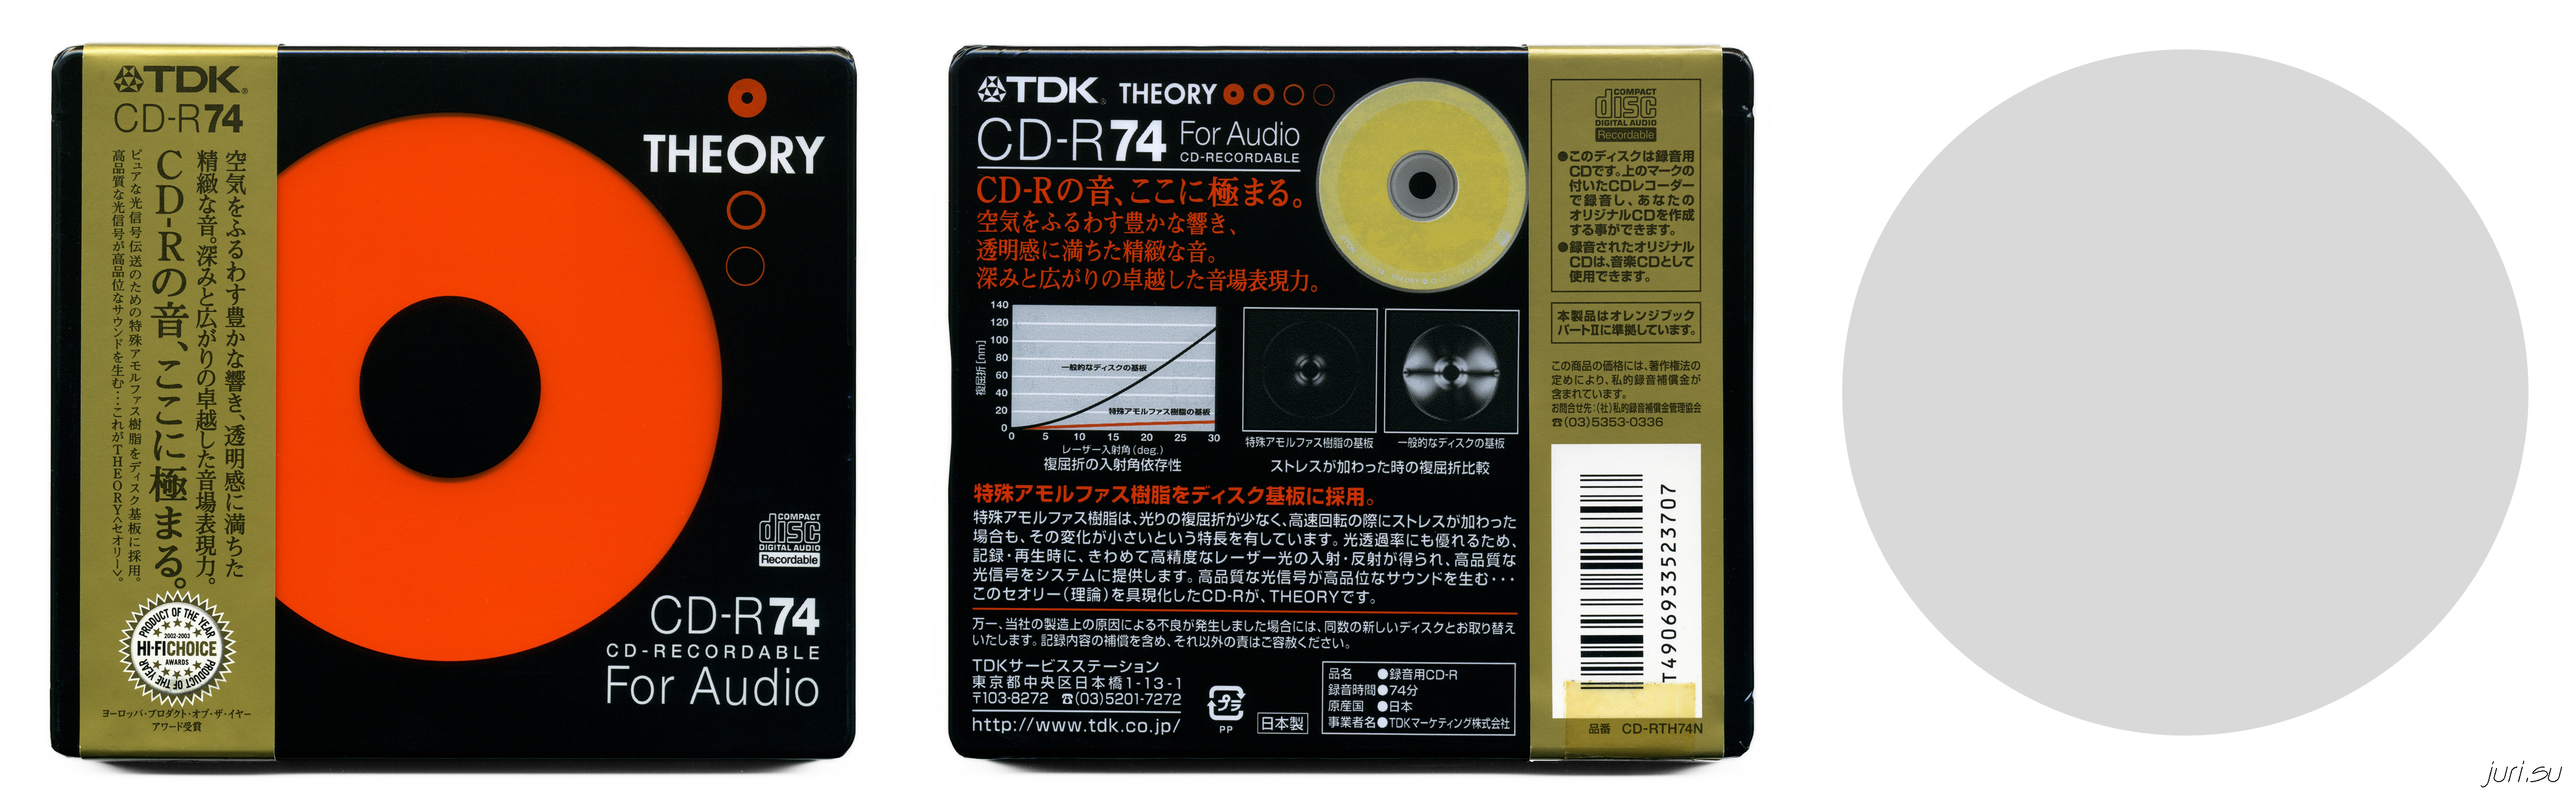 大人気 雑貨ストア広島2 VGP2021 金賞 企画賞 データ用 CD-R 700MB 52